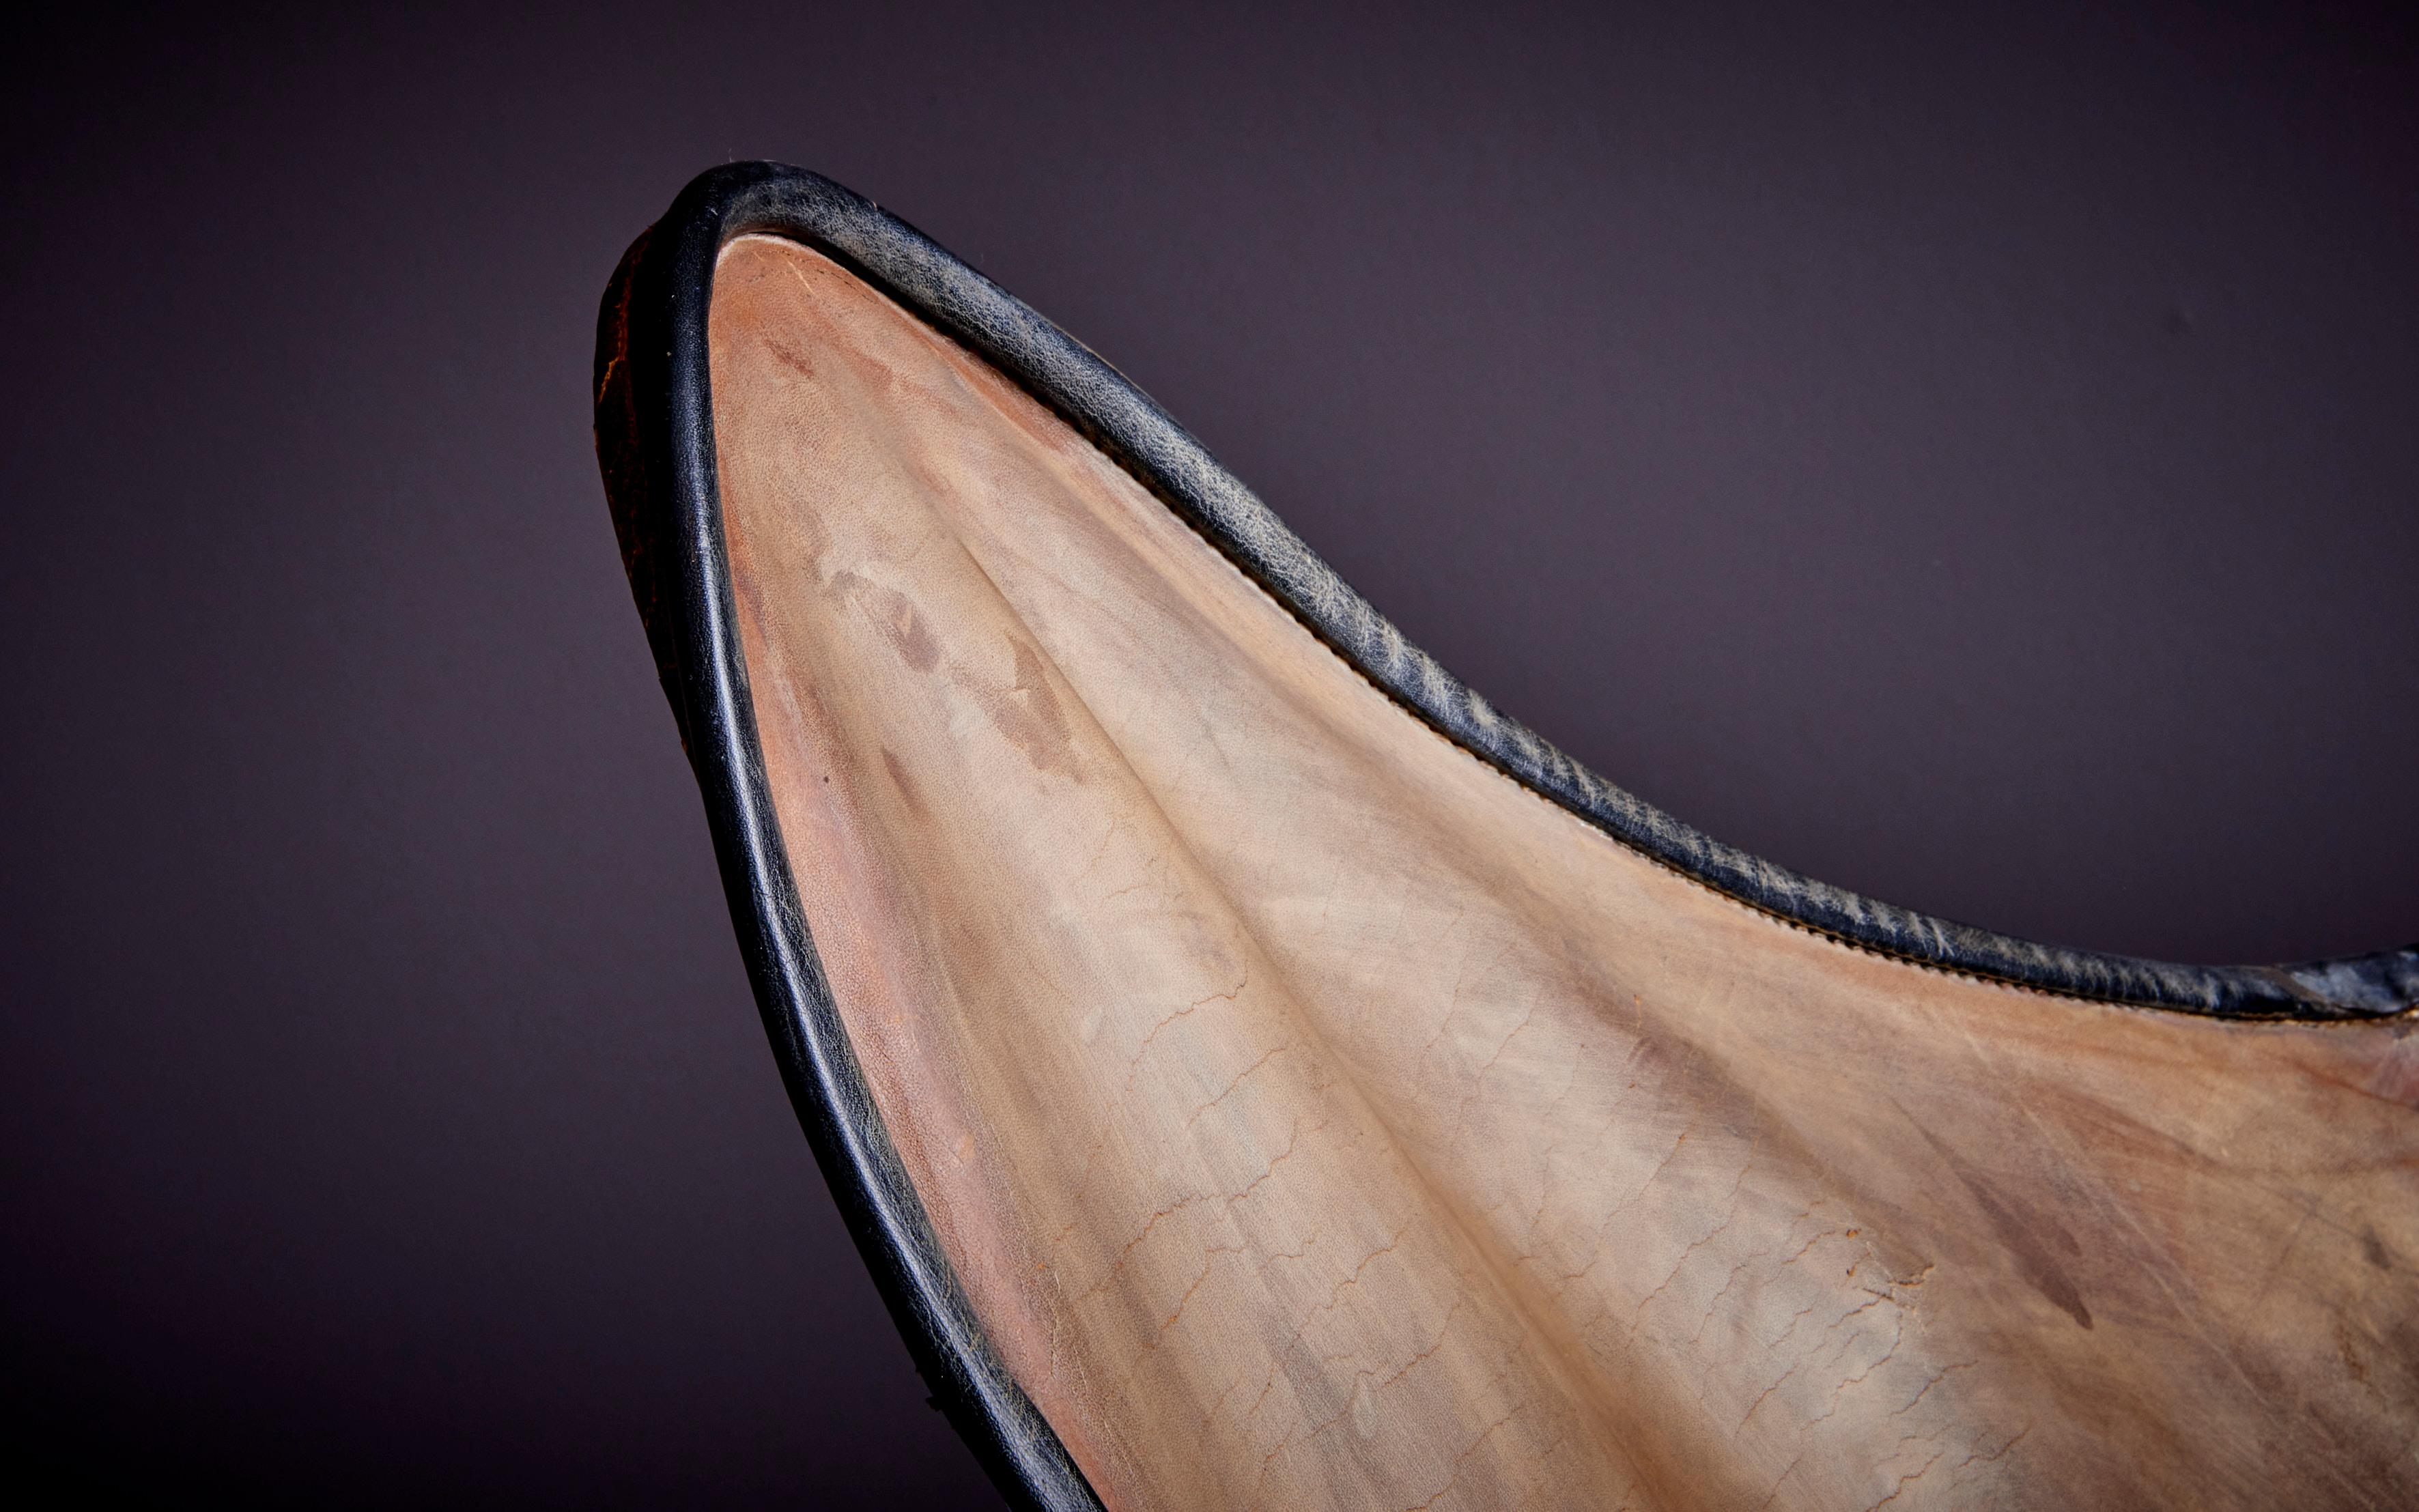 Nous avons un autre modèle de la chaise papillon en cuir marron clair. 
 
La chaise papillon, également connue sous le nom de chaise BKF ou de chaise Hardoy, est une chaise pliante au design simple mais élégant. La chaise se compose d'une structure